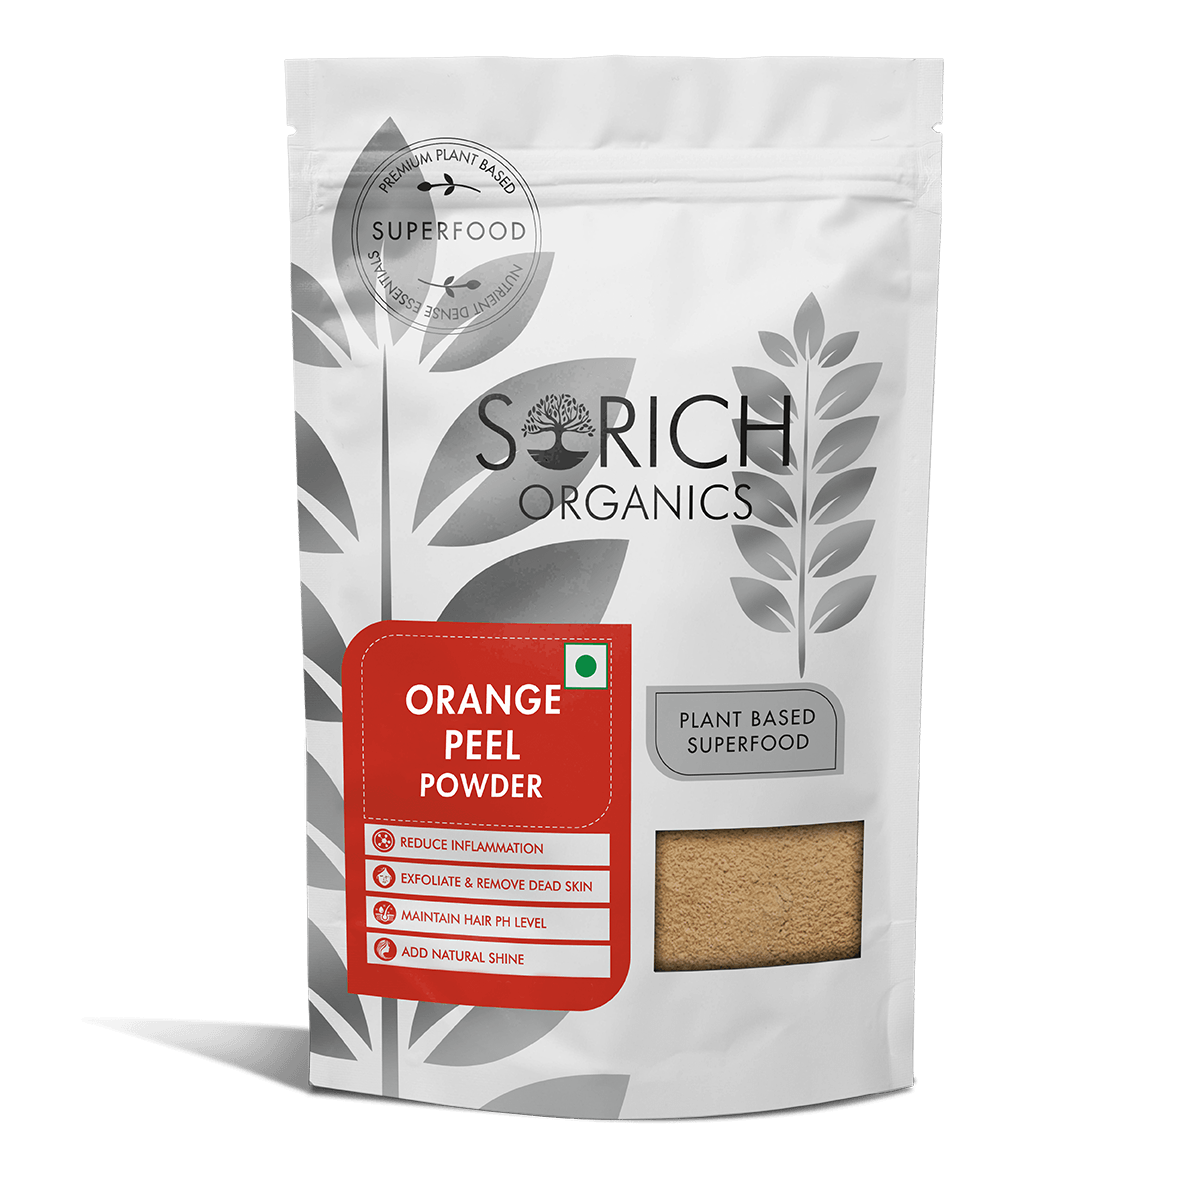 Buy Dried Orange Peel Powder Online In India — Sorich